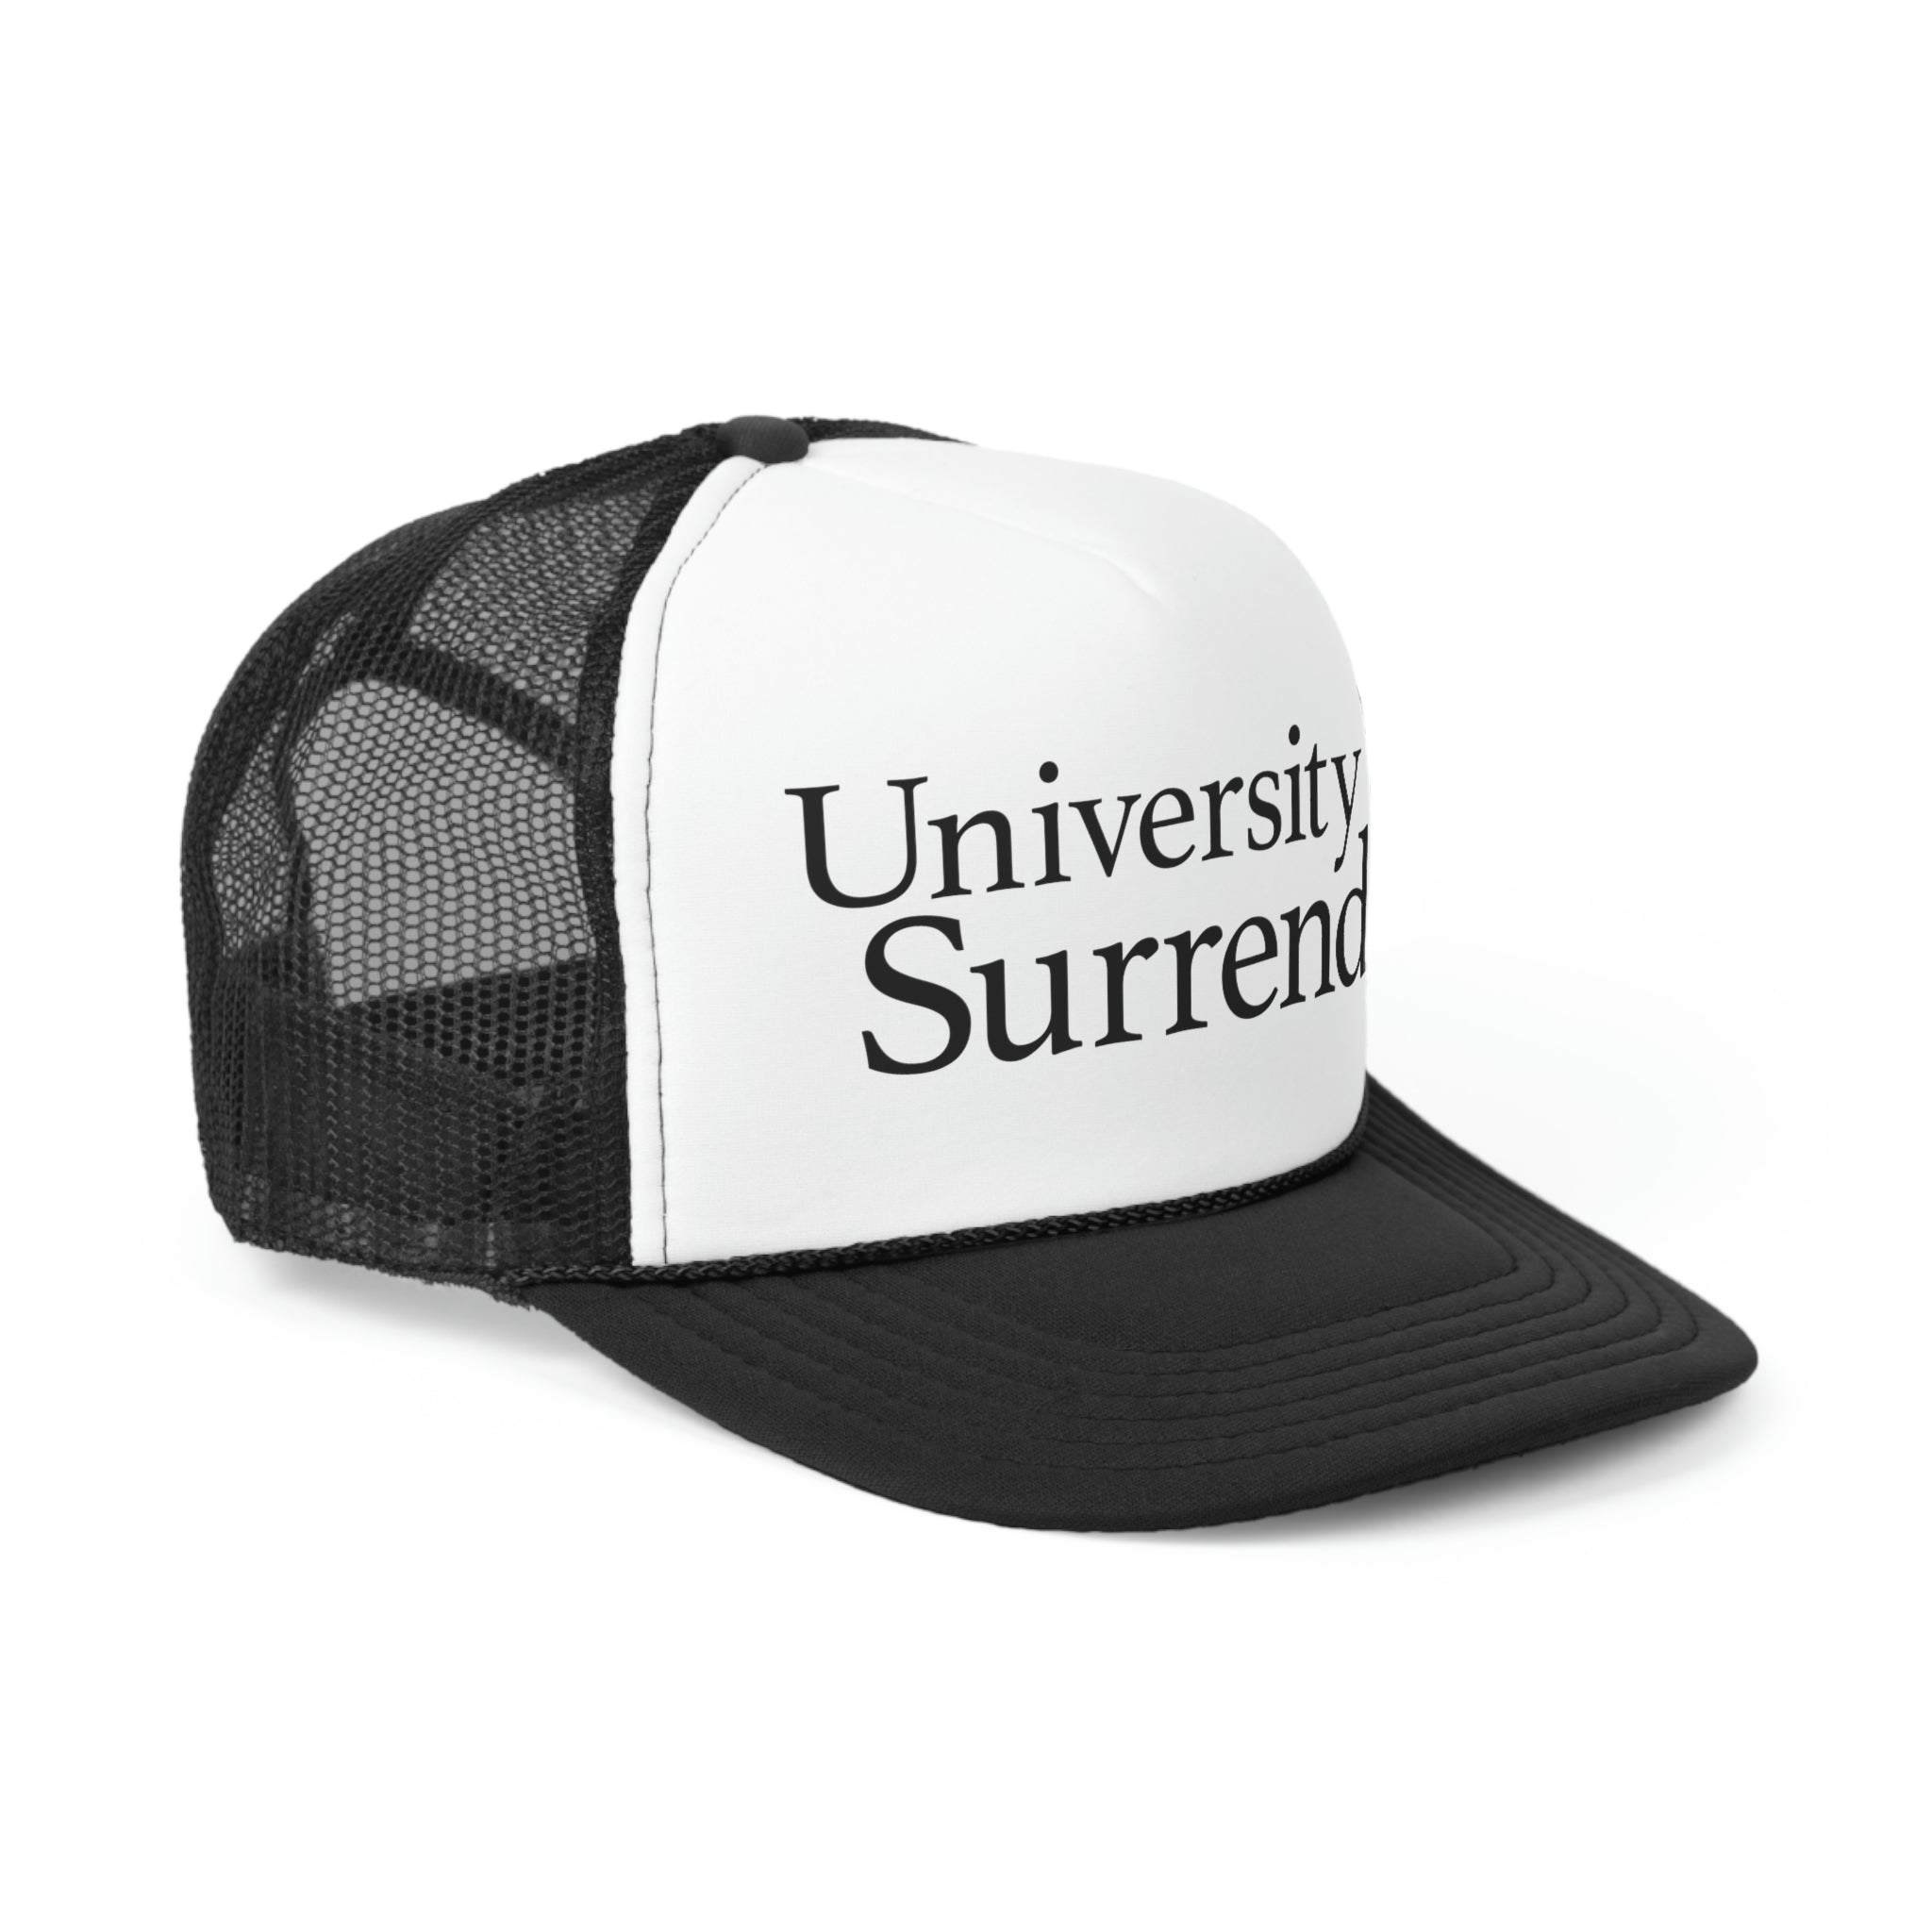 University of Surrender Trucker Cap